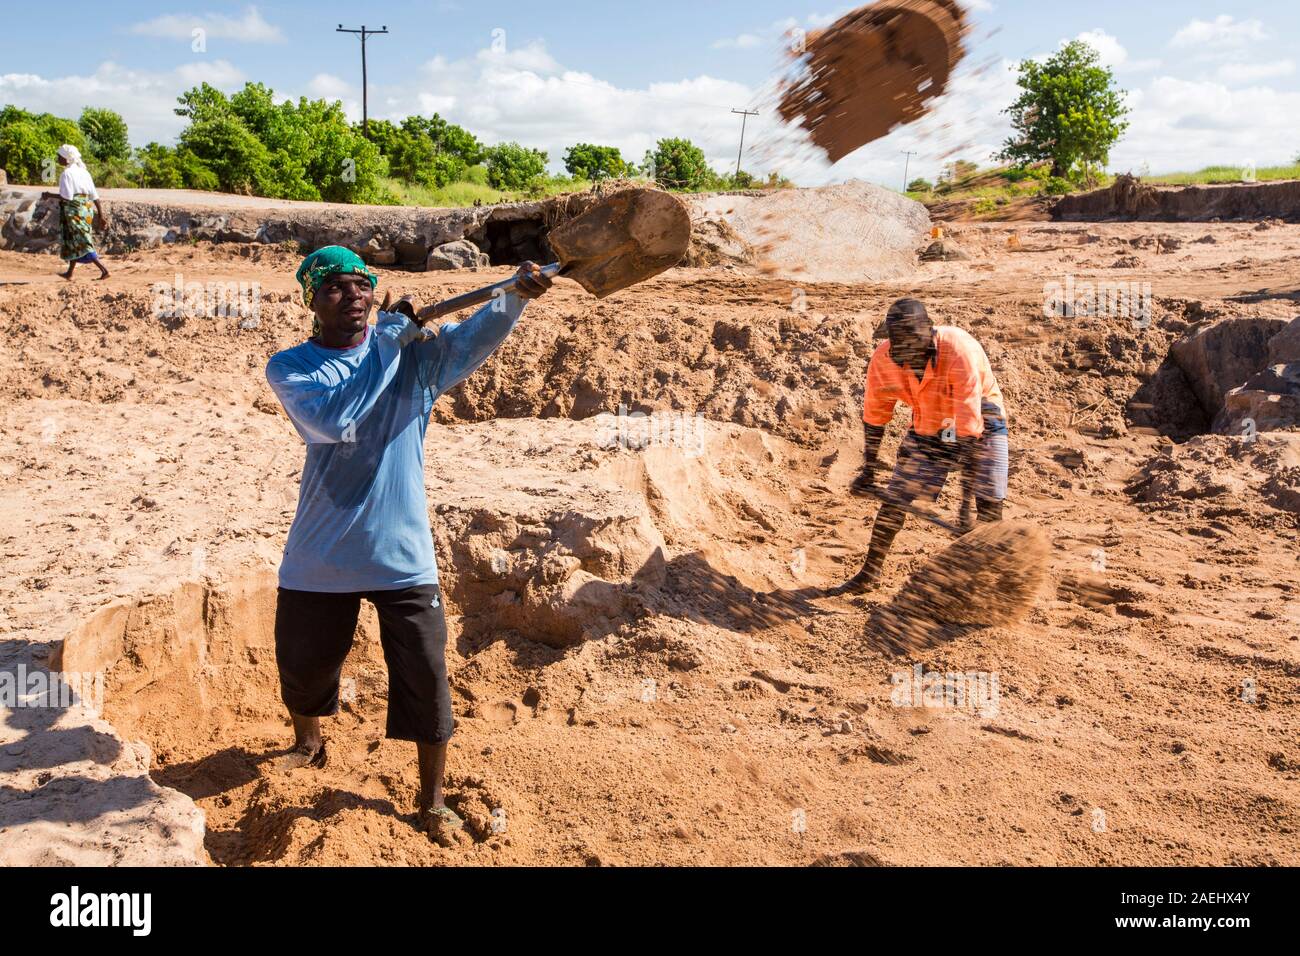 Malawier Schaufeln der Riverbed Sand für Verwendung im Bauwesen, in der Nähe von Chikwawa, Malawi. Stockfoto